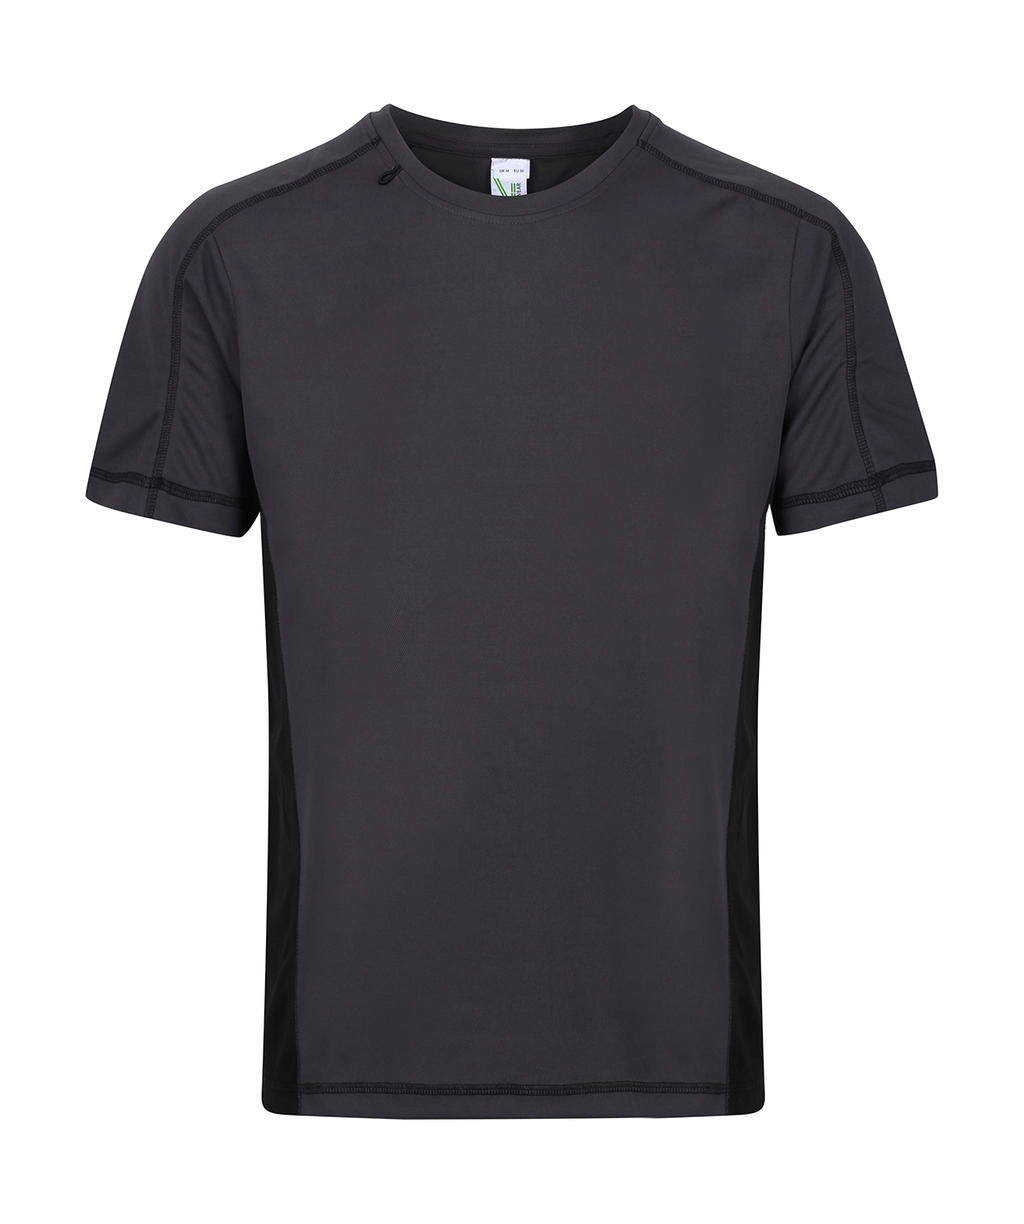 Beijing T-Shirt zum Besticken und Bedrucken in der Farbe Iron/Black mit Ihren Logo, Schriftzug oder Motiv.